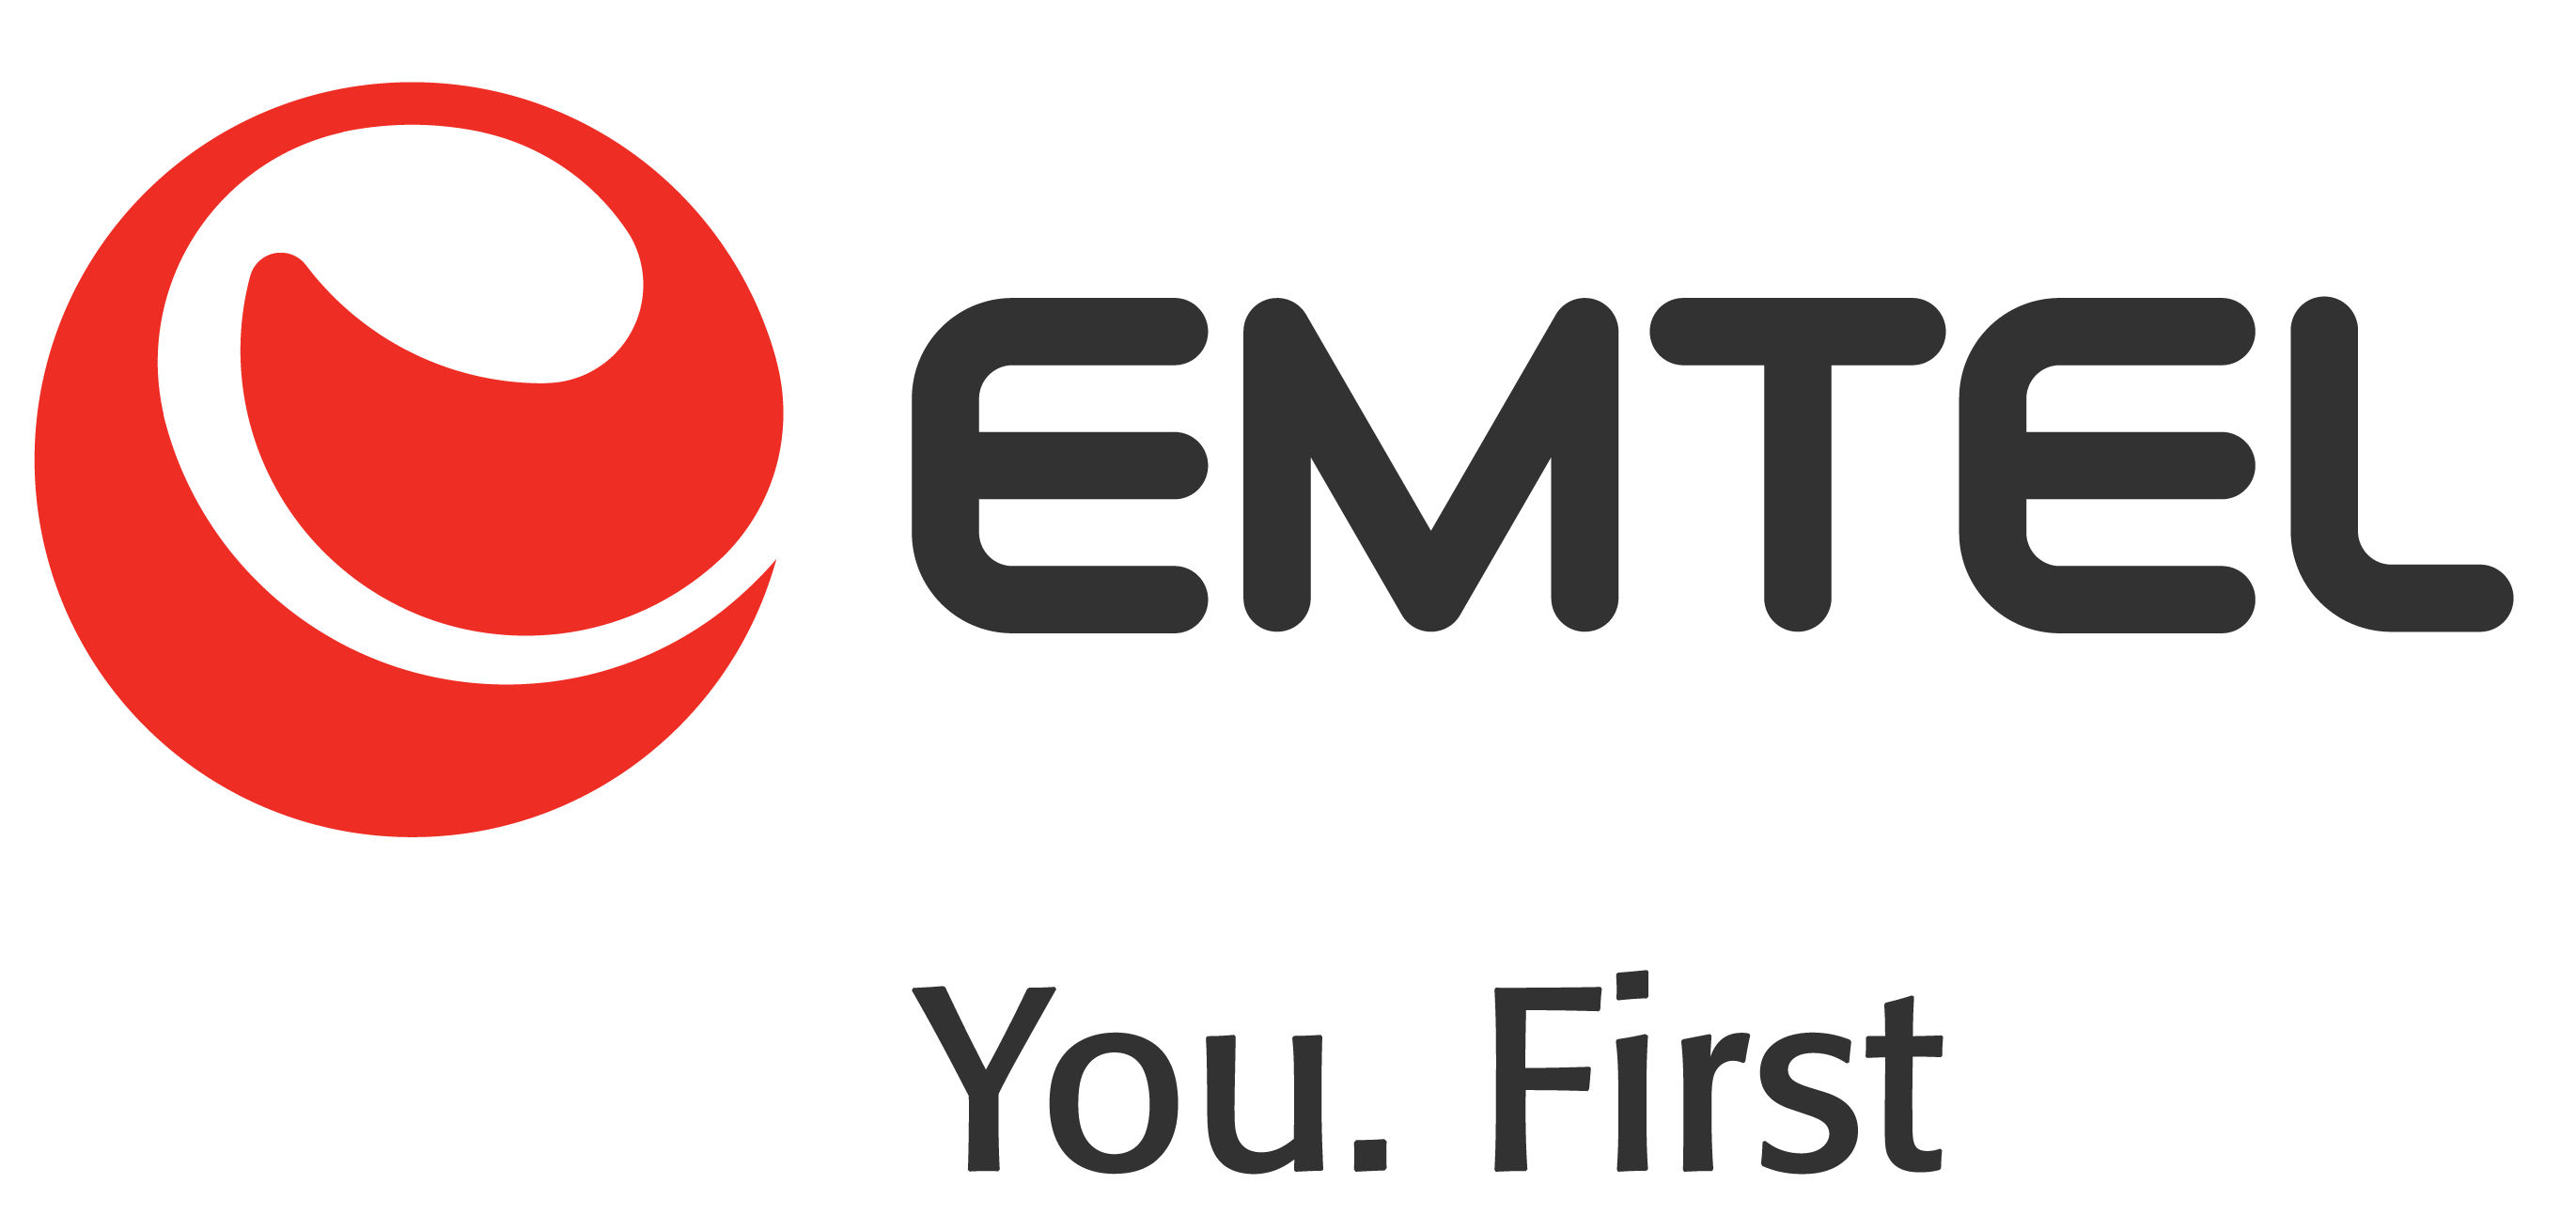 Emtel logo CMYK - You first-01.png